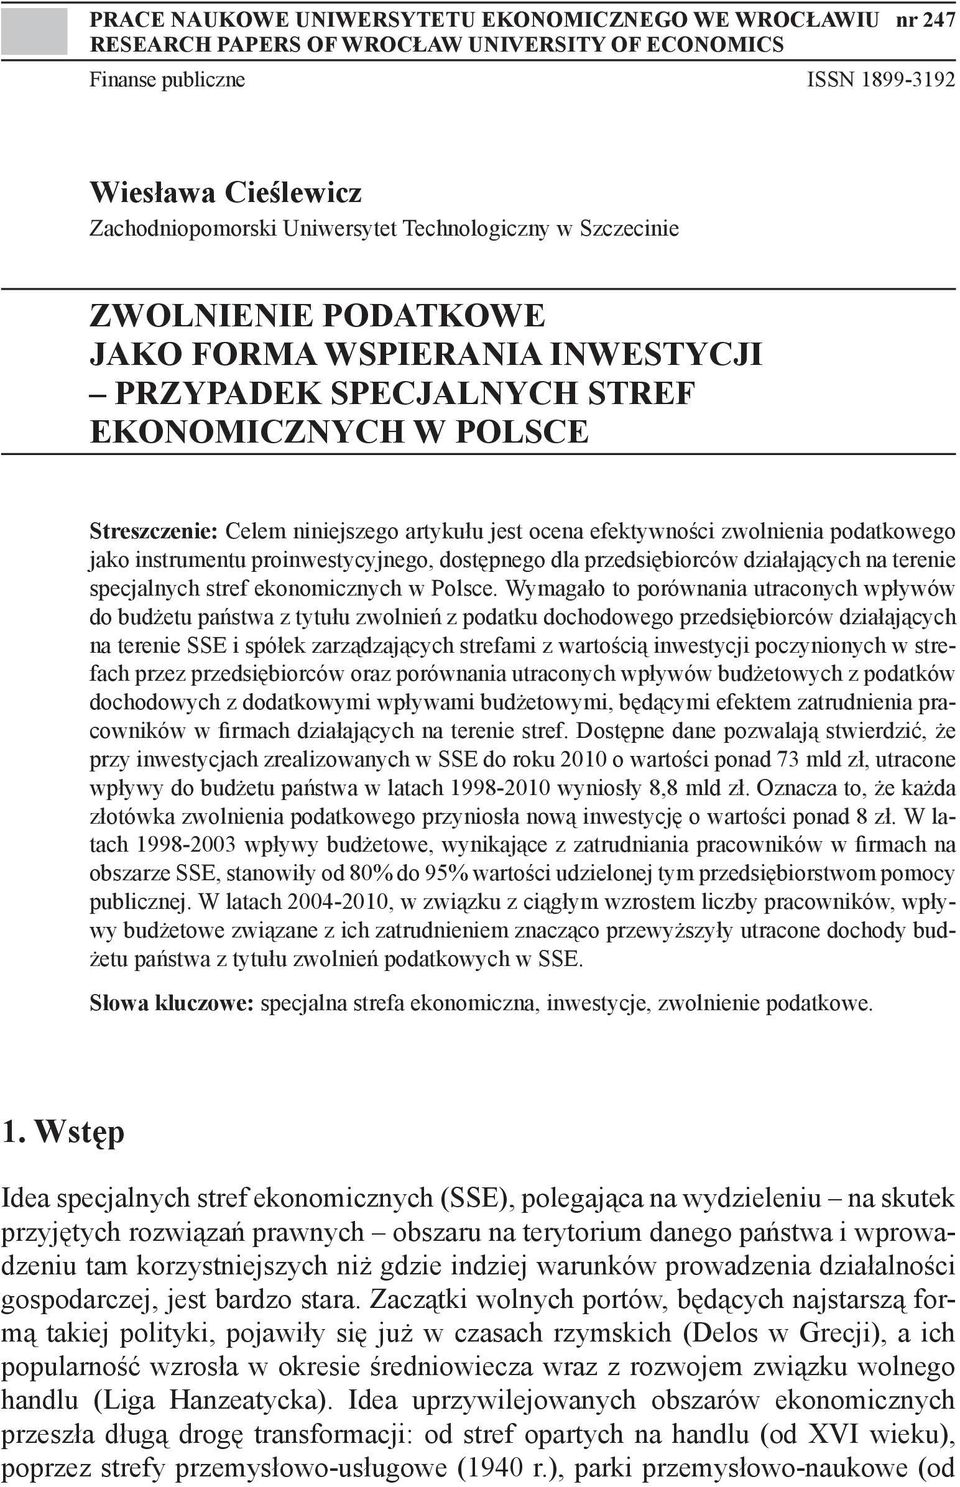 zwolnienia podatkowego jako instrumentu proinwestycyjnego, dostępnego dla przedsiębiorców działających na terenie specjalnych stref ekonomicznych w Polsce.